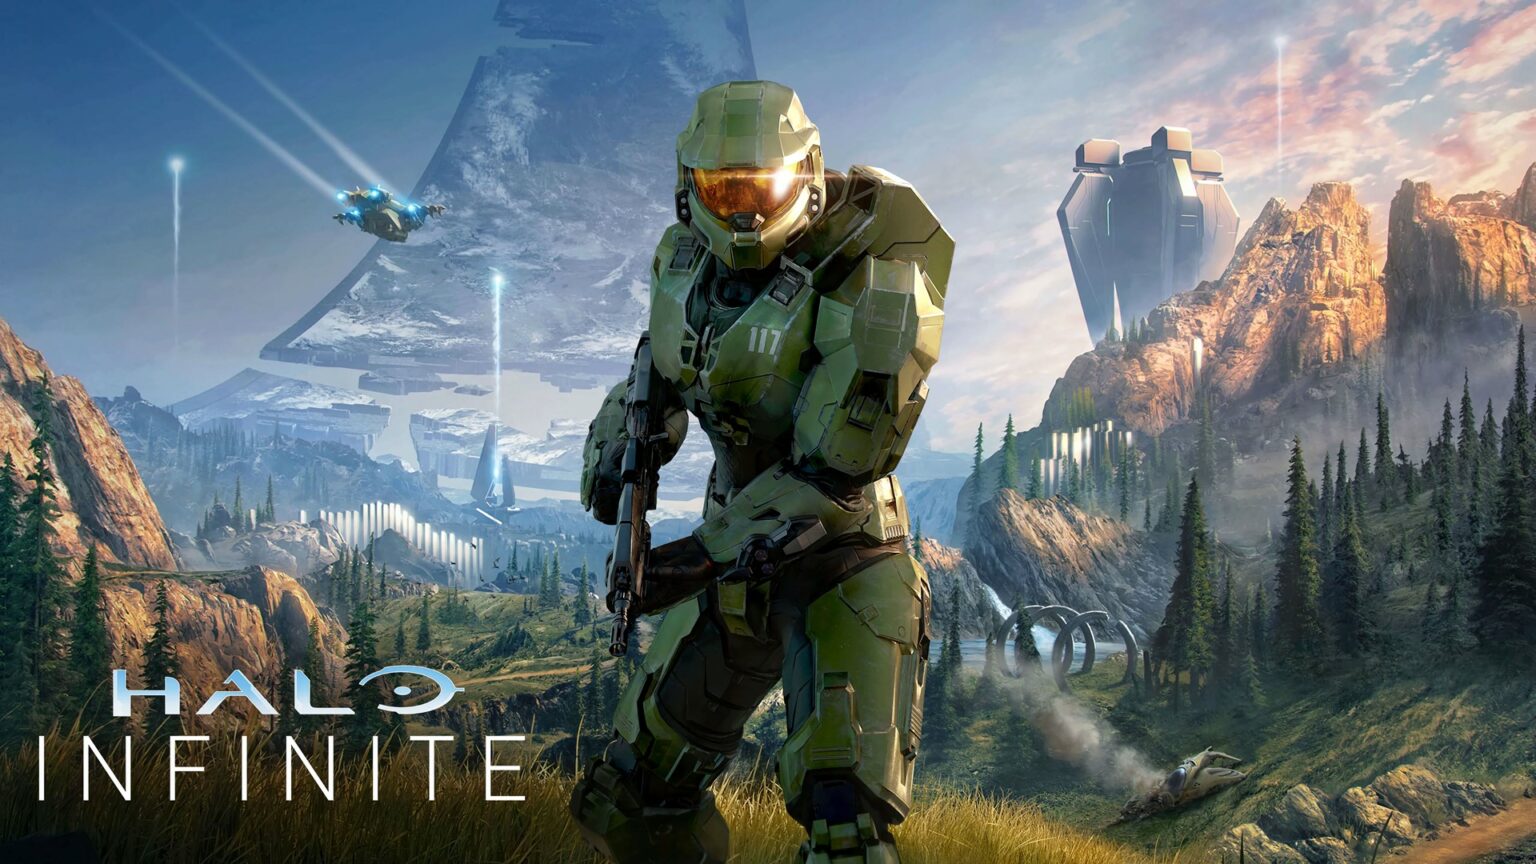 ¿Quieres probar la versión beta del nuevo juego Halo Infinite? - ¡Así es cómo! cubrir